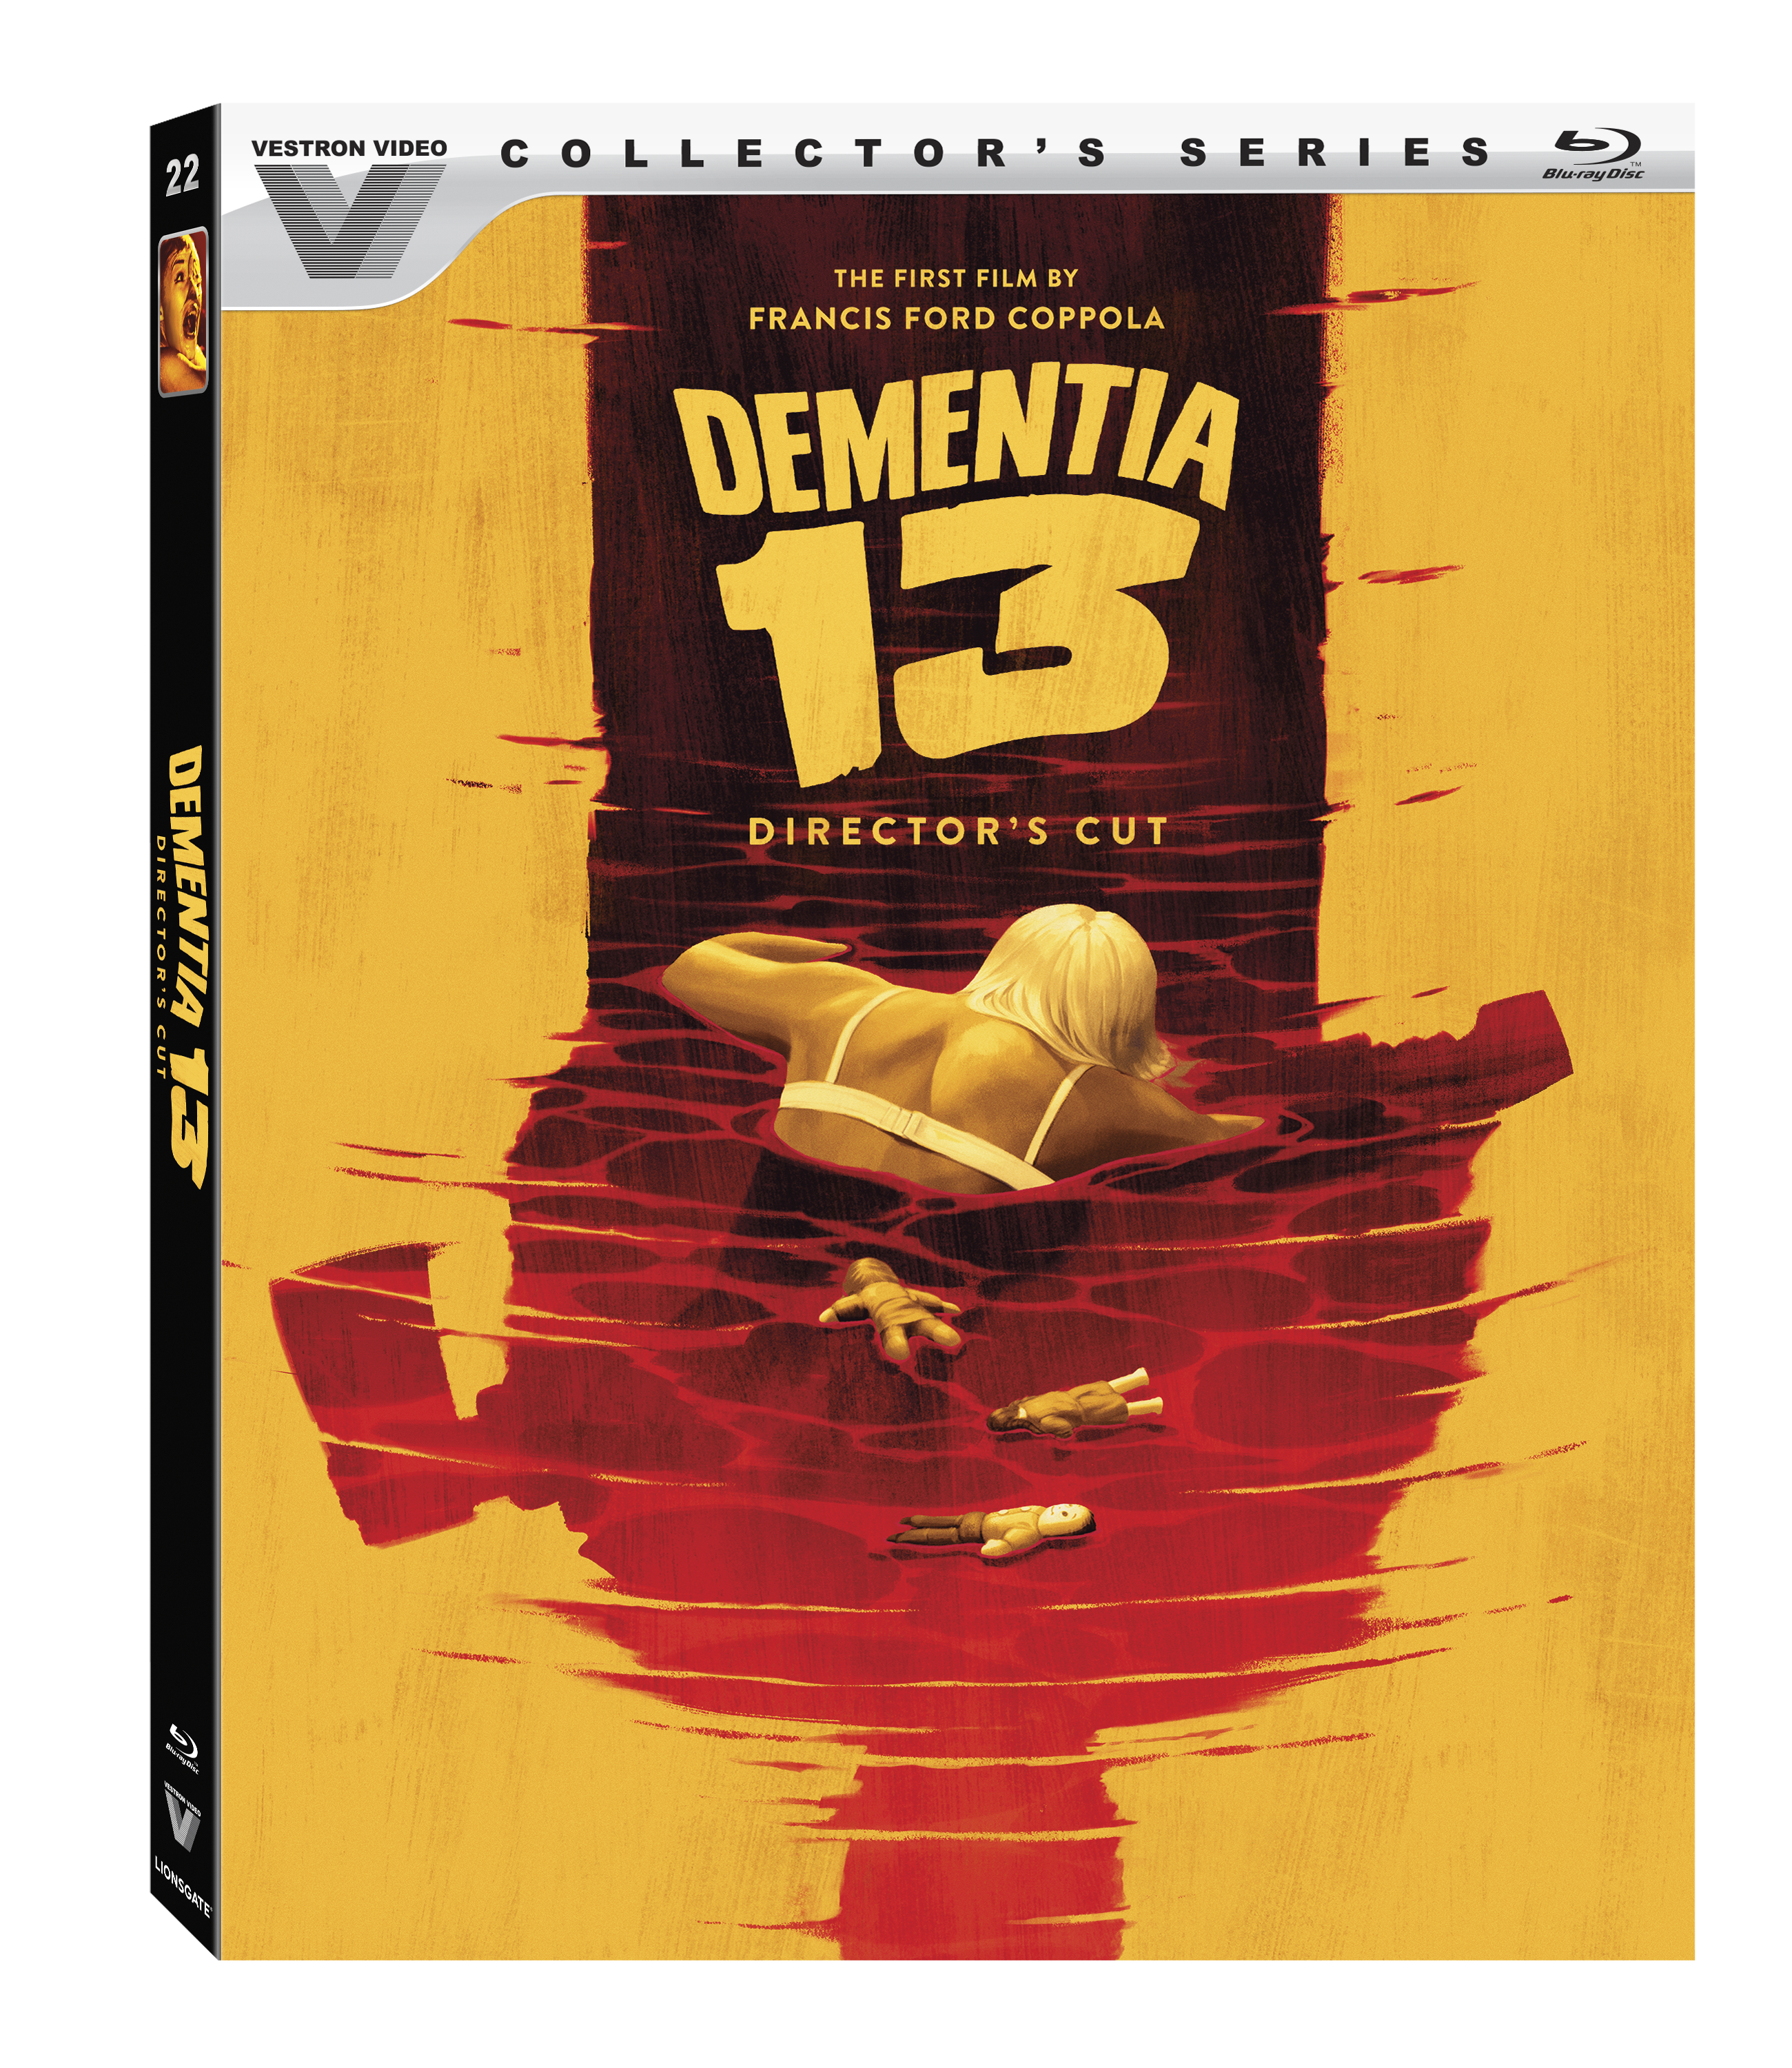 Dementia 13: Director's Cut Box Cover Art